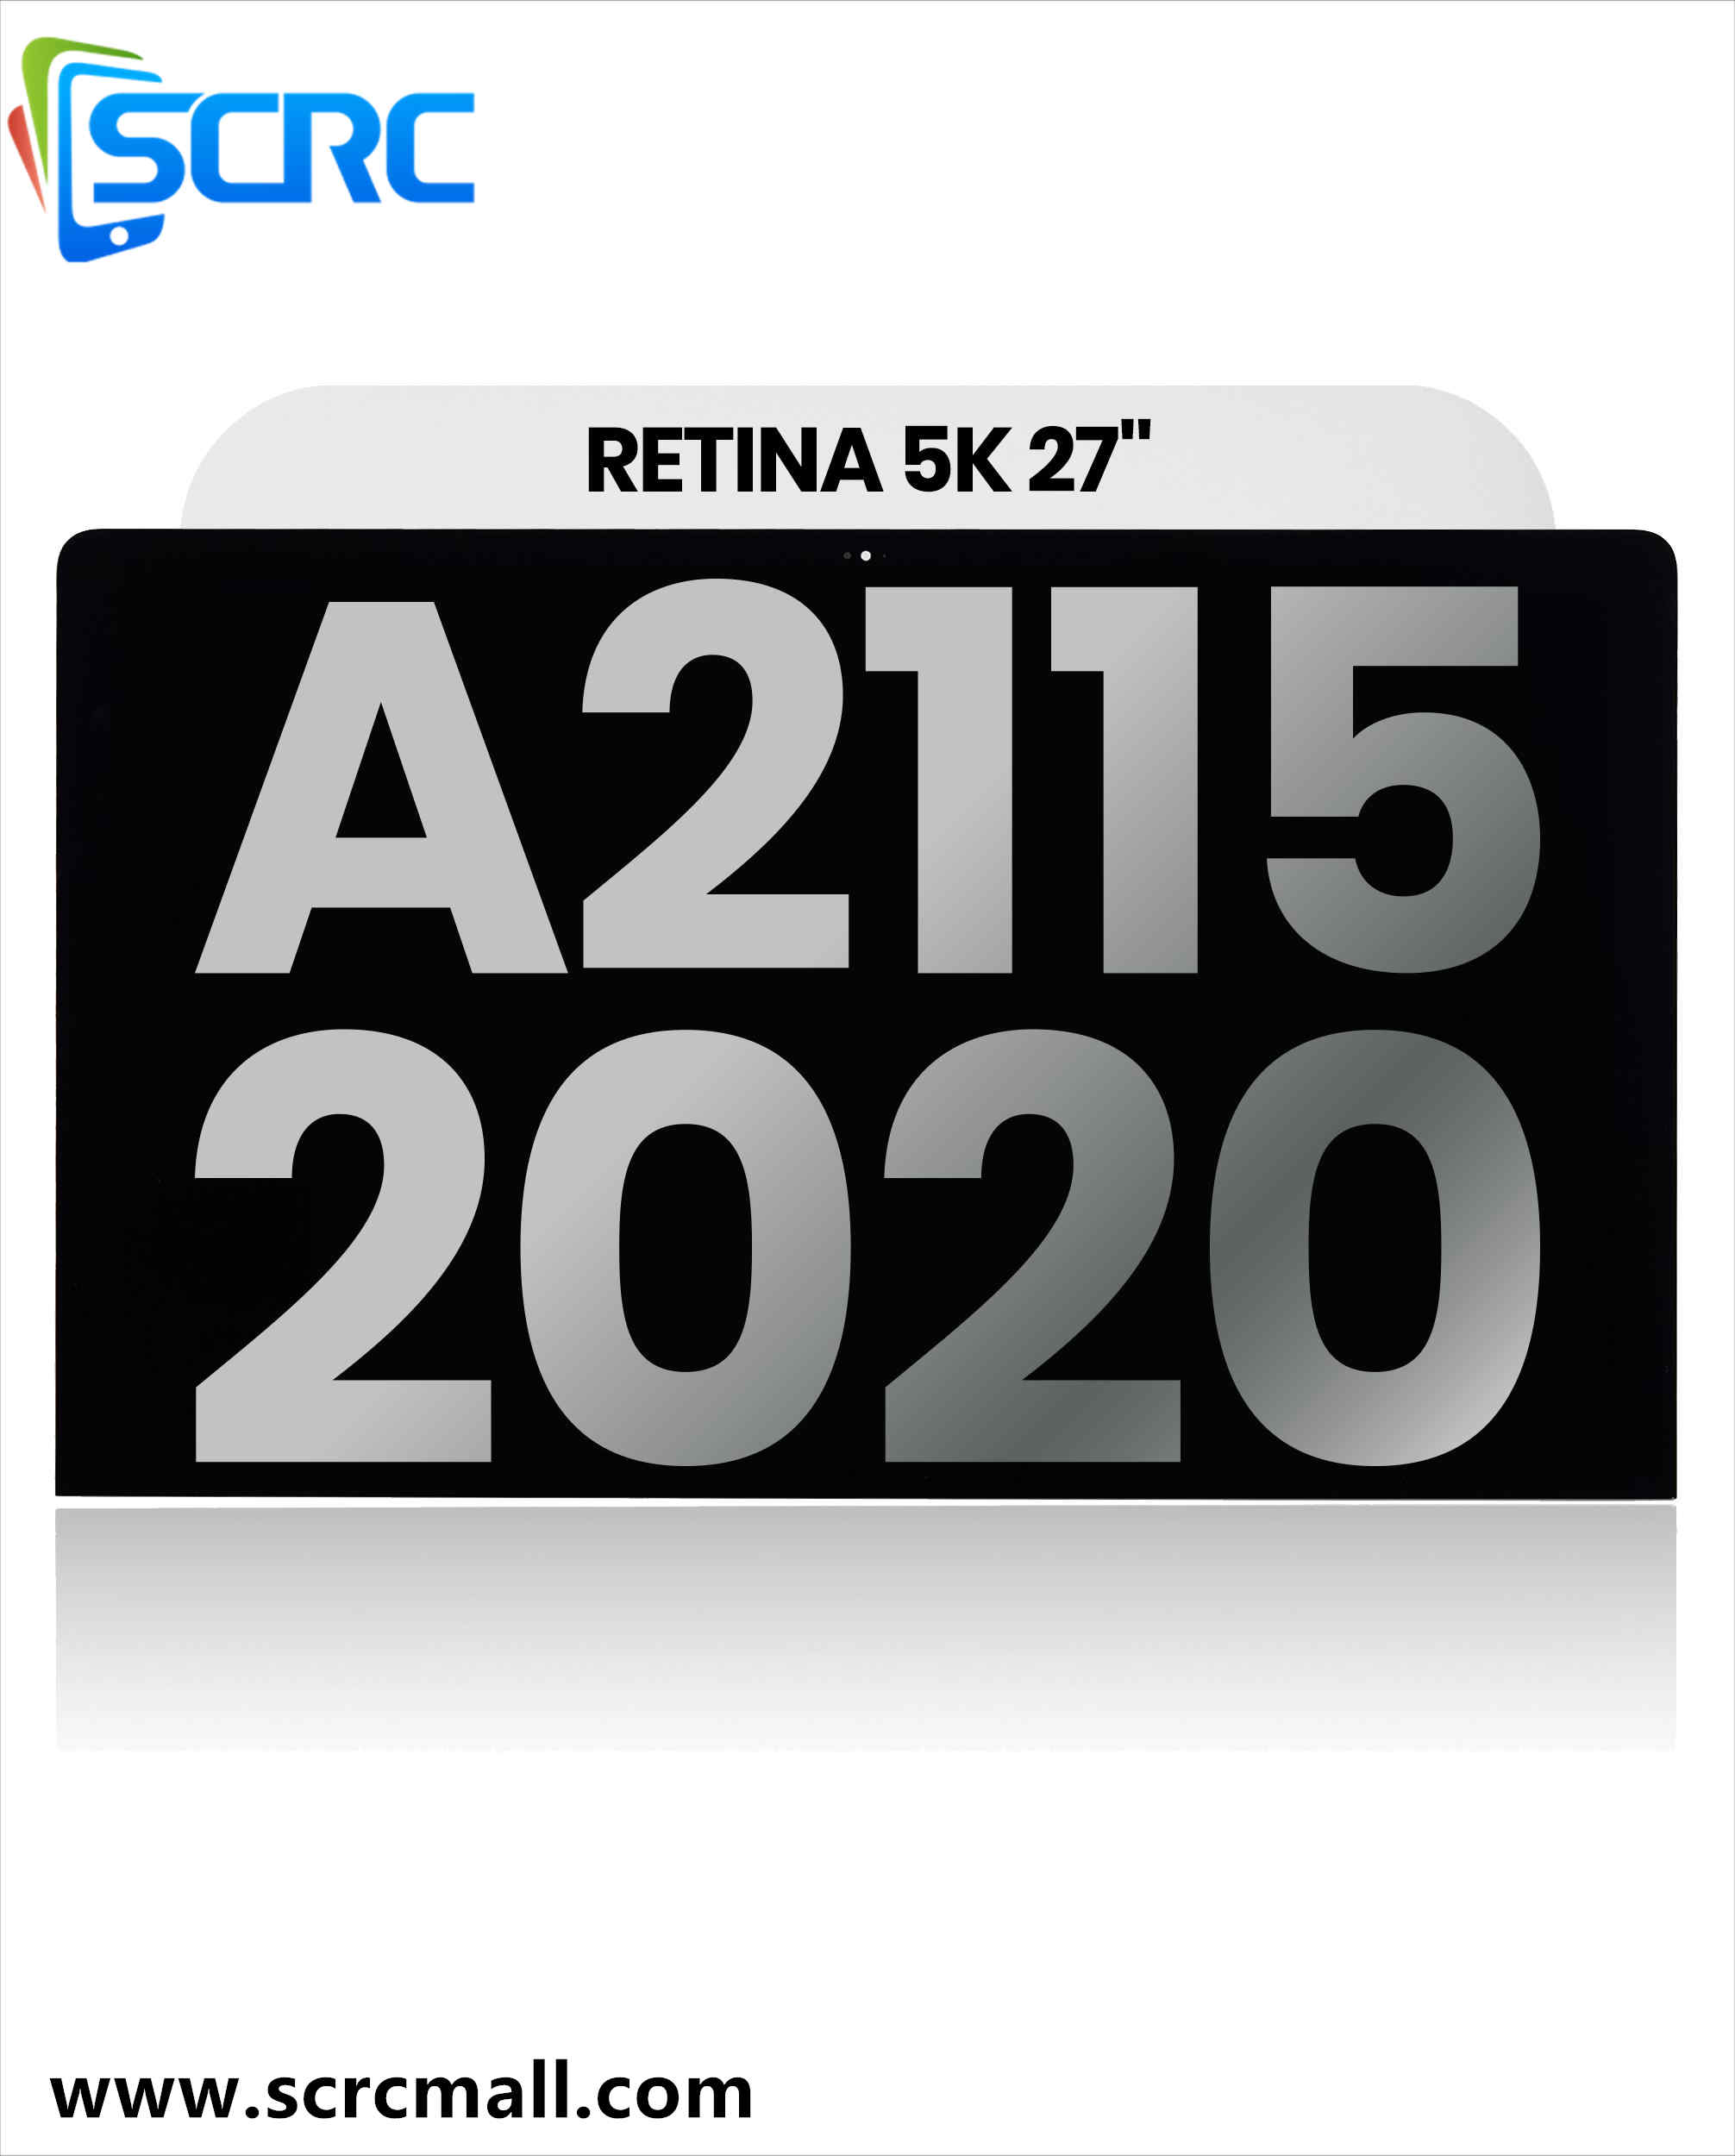 LCD-ekraan iMaci 27-tollise Retina 5K jaoks (A2115, 2020. aasta keskpaik)